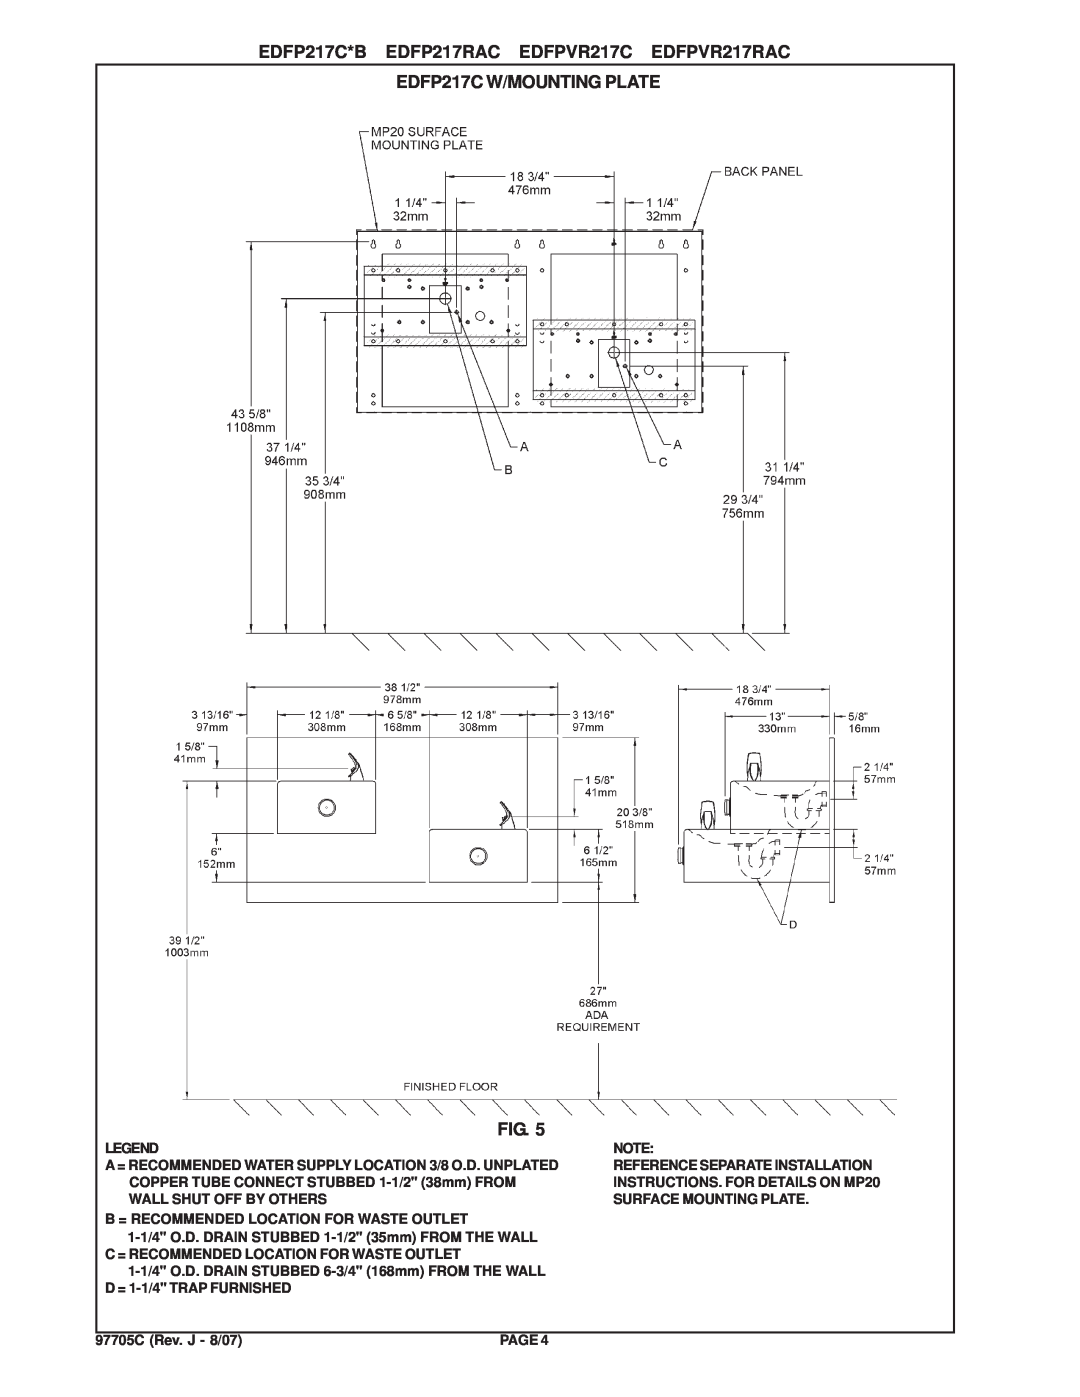 Elkay manual EDFP217C W/MOUNTING PLATE, EDFP217C*B EDFP217RAC EDFPVR217C EDFPVR217RAC 